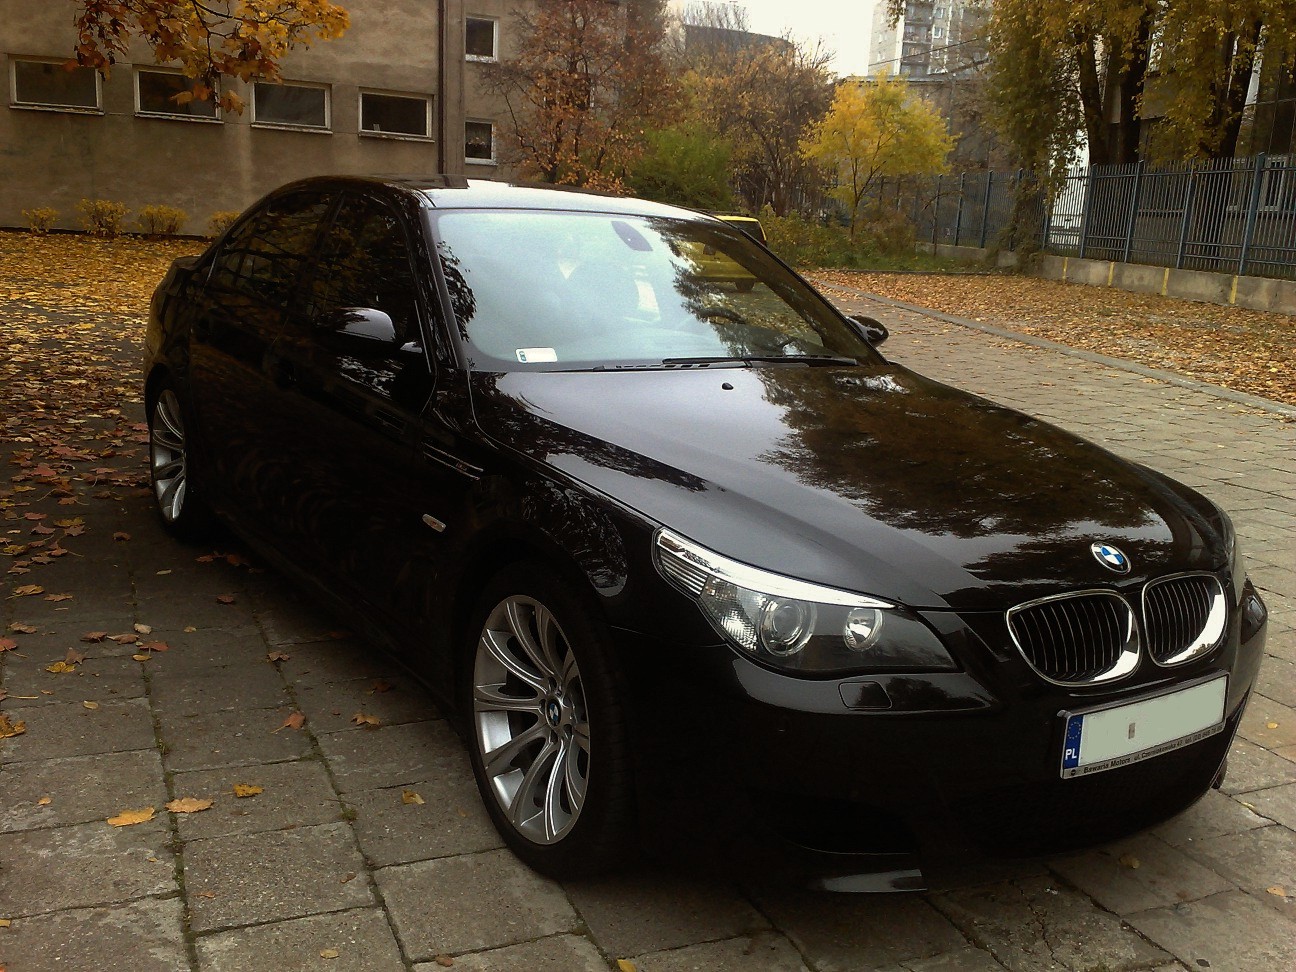 BMWklub.pl • Zobacz temat [E39] E60 M5 V10 i E39 ACS5 4